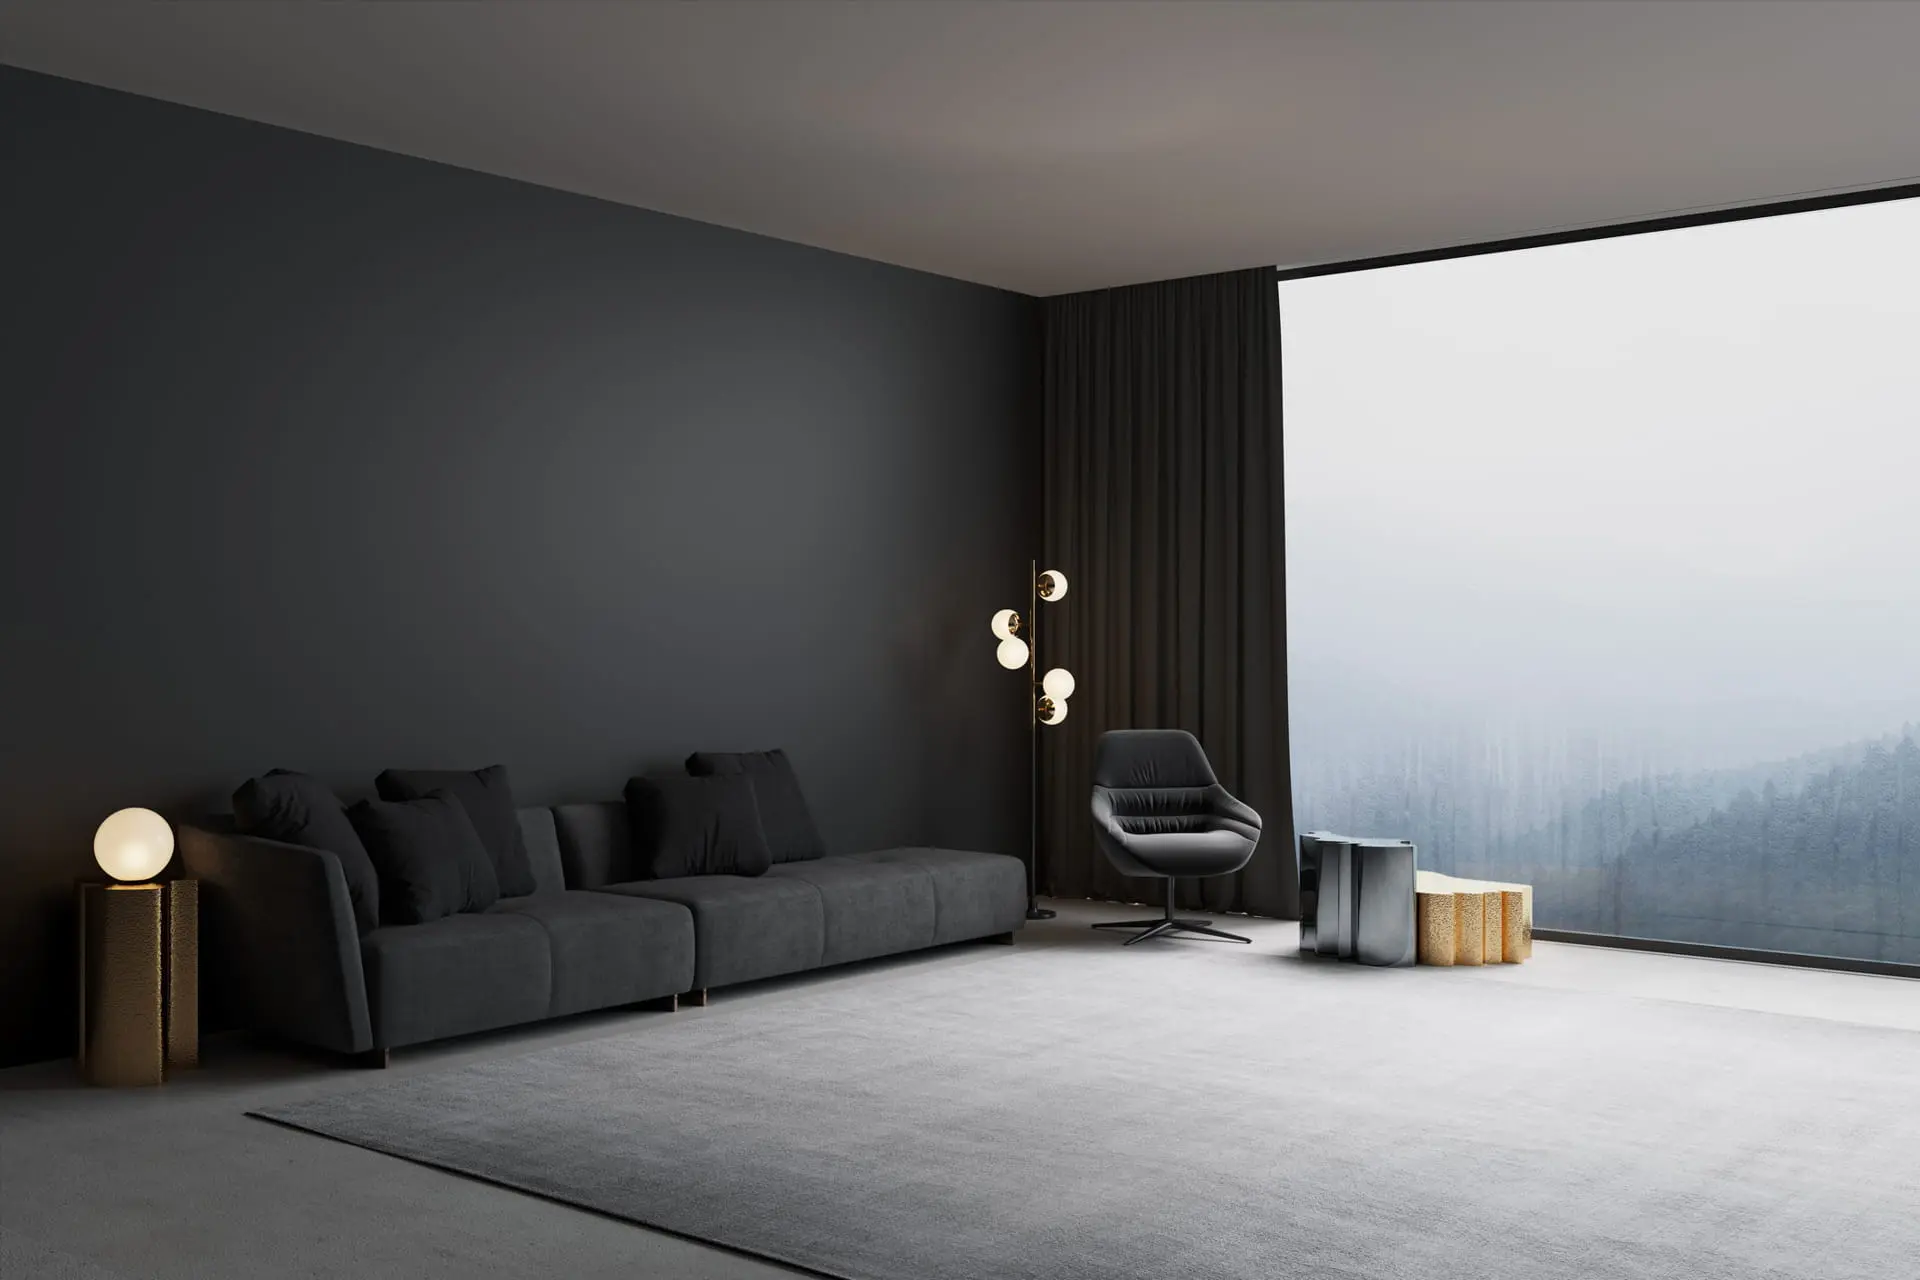 Sodobna dnevna soba okrašena z mikrocementom v temni barvi